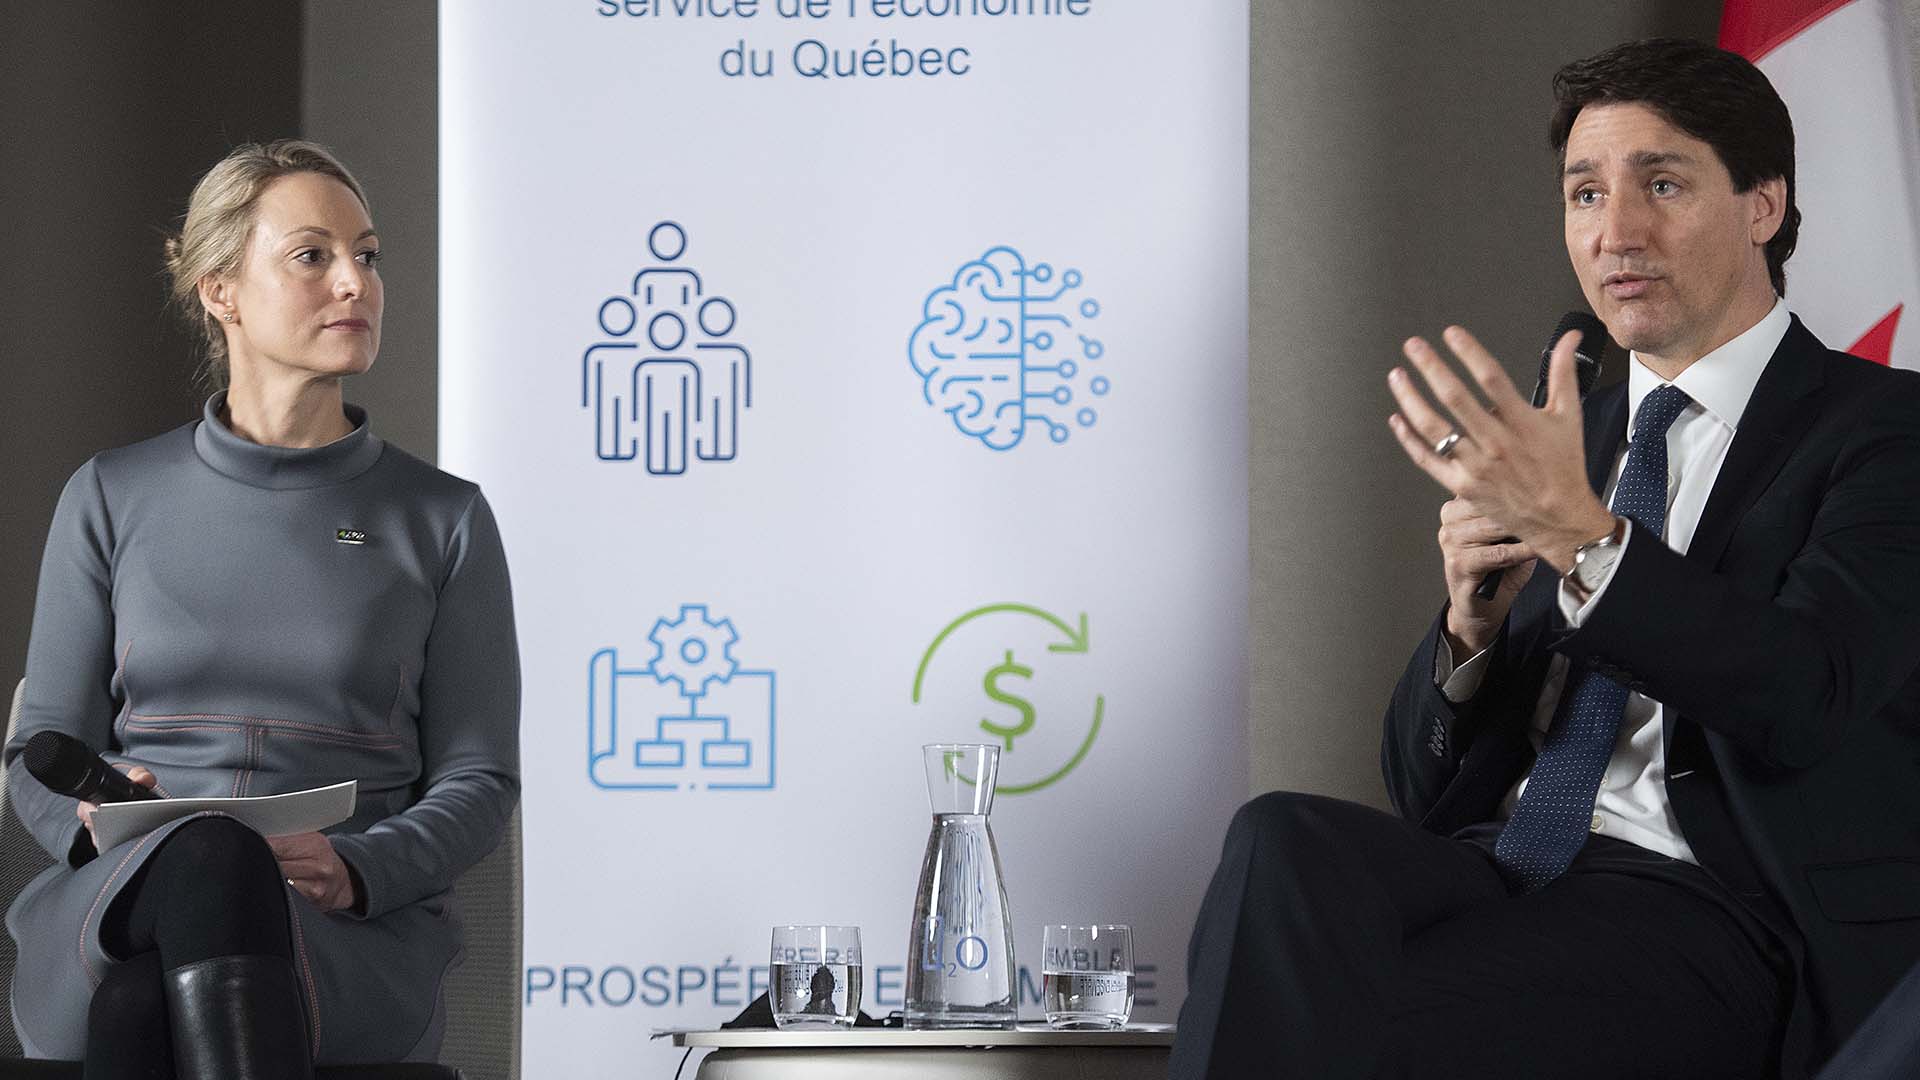 Le premier ministre Justin Trudeau s'adresse aux membres du Conseil du patronat du Québec en tant que présidente du conseil d'administration du CPQ. À sa droite, Emilie Dussault